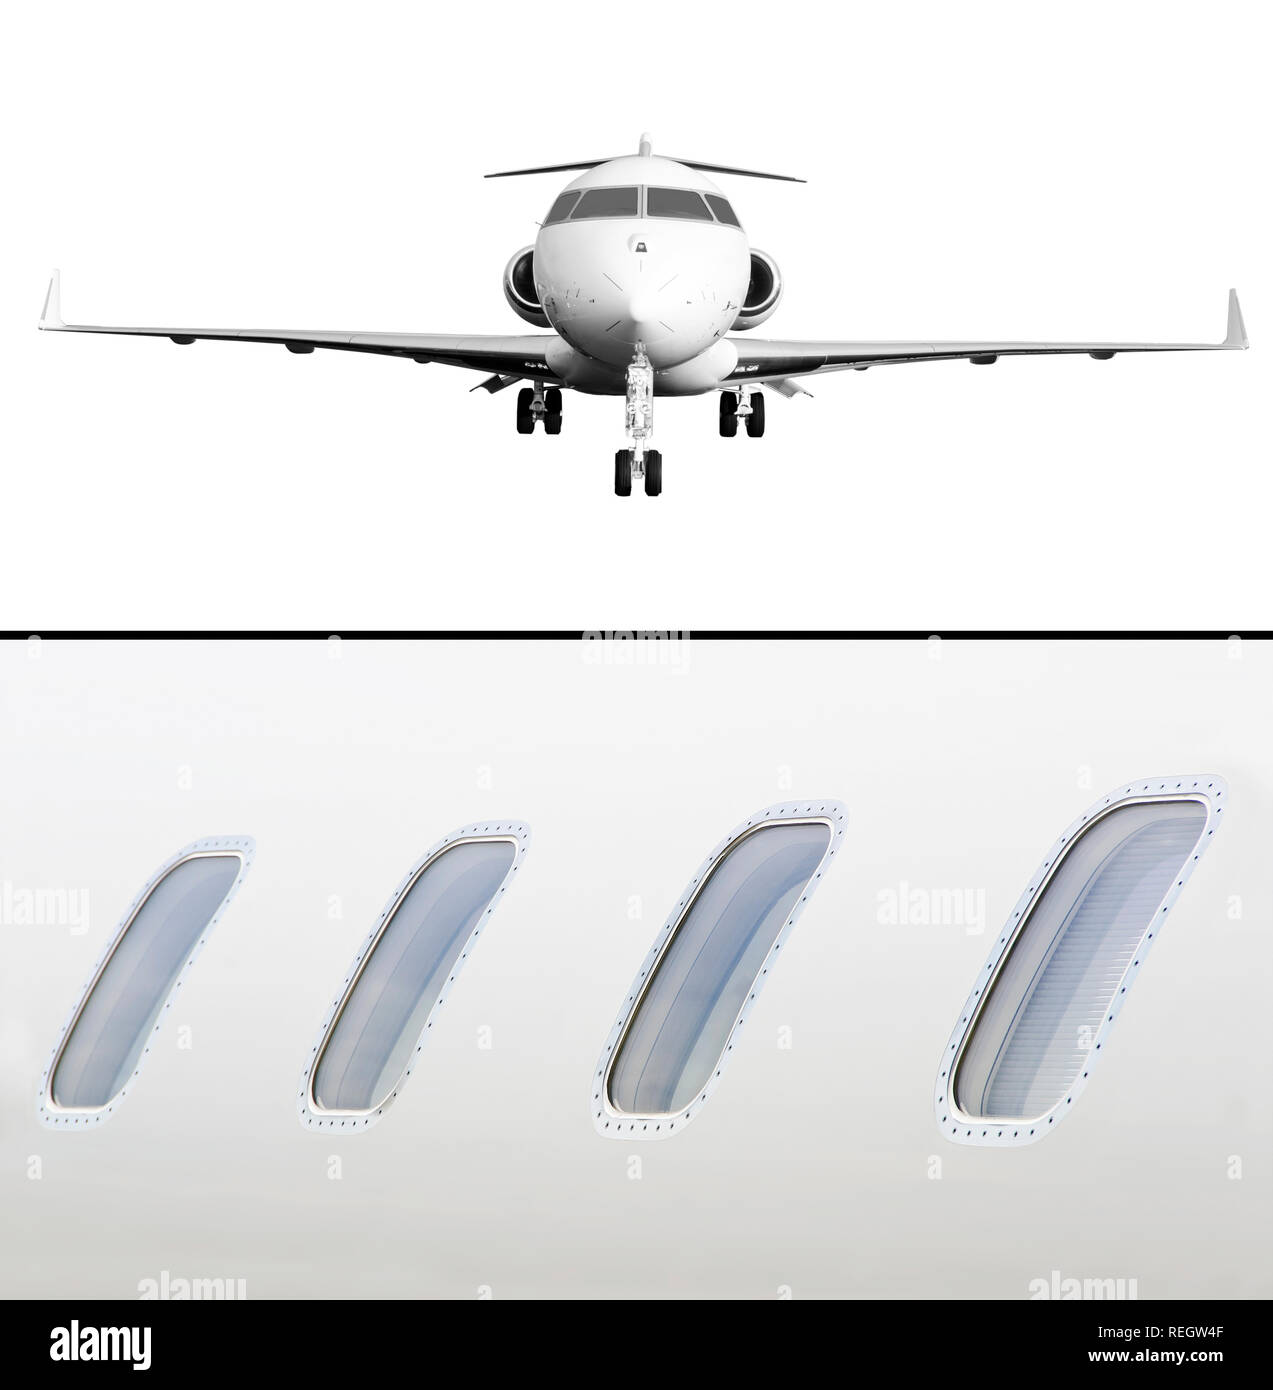 Sammlung von zwei Fotos von privaten Jets isoliert auf Weiss und Detail der vier Fenster von airplace Stockfoto